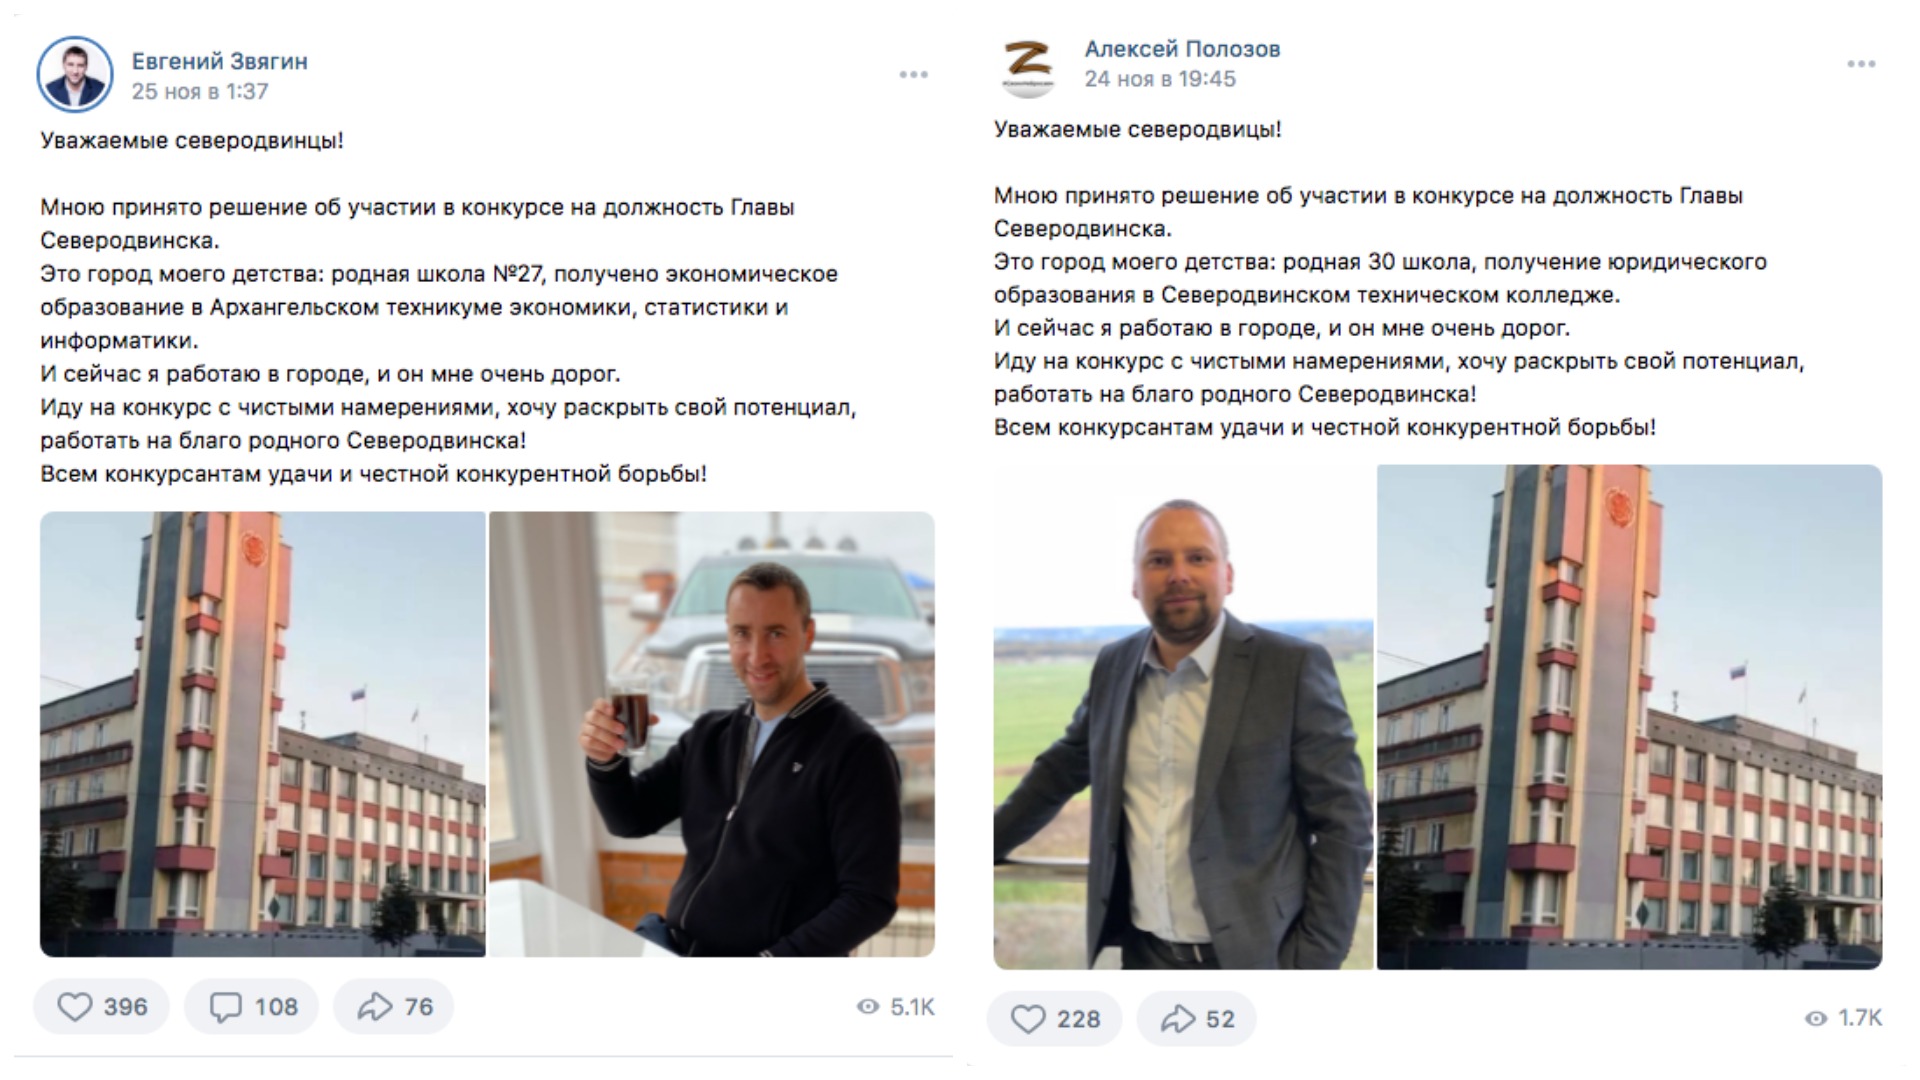 Кандидаты на пост главы Северодвинска опубликовали похожие посты. Фото © VK / Евгений Звягин / Алексей Полозов